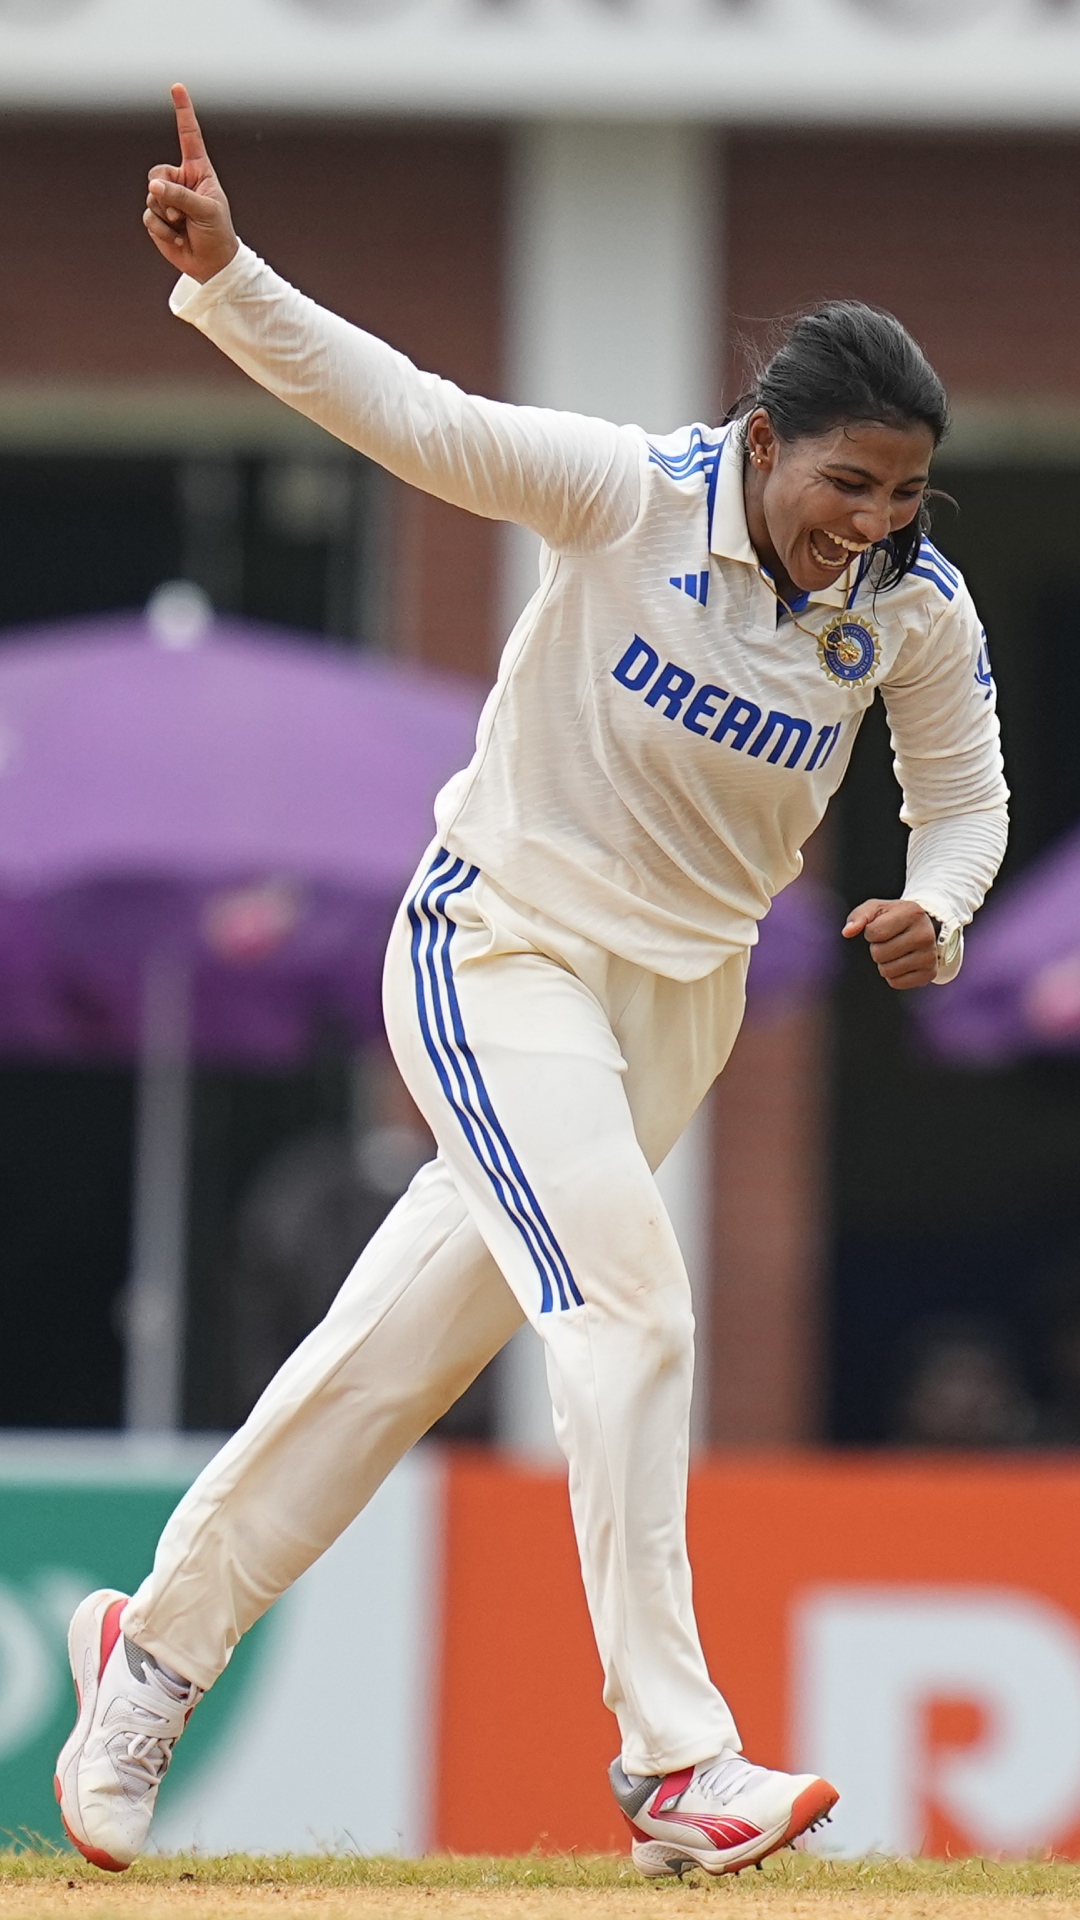 भारत के लिए महिला टेस्ट क्रिकेट में एक मैच में सबसे अधिक विकेट लेने वालीं खिलाड़ी